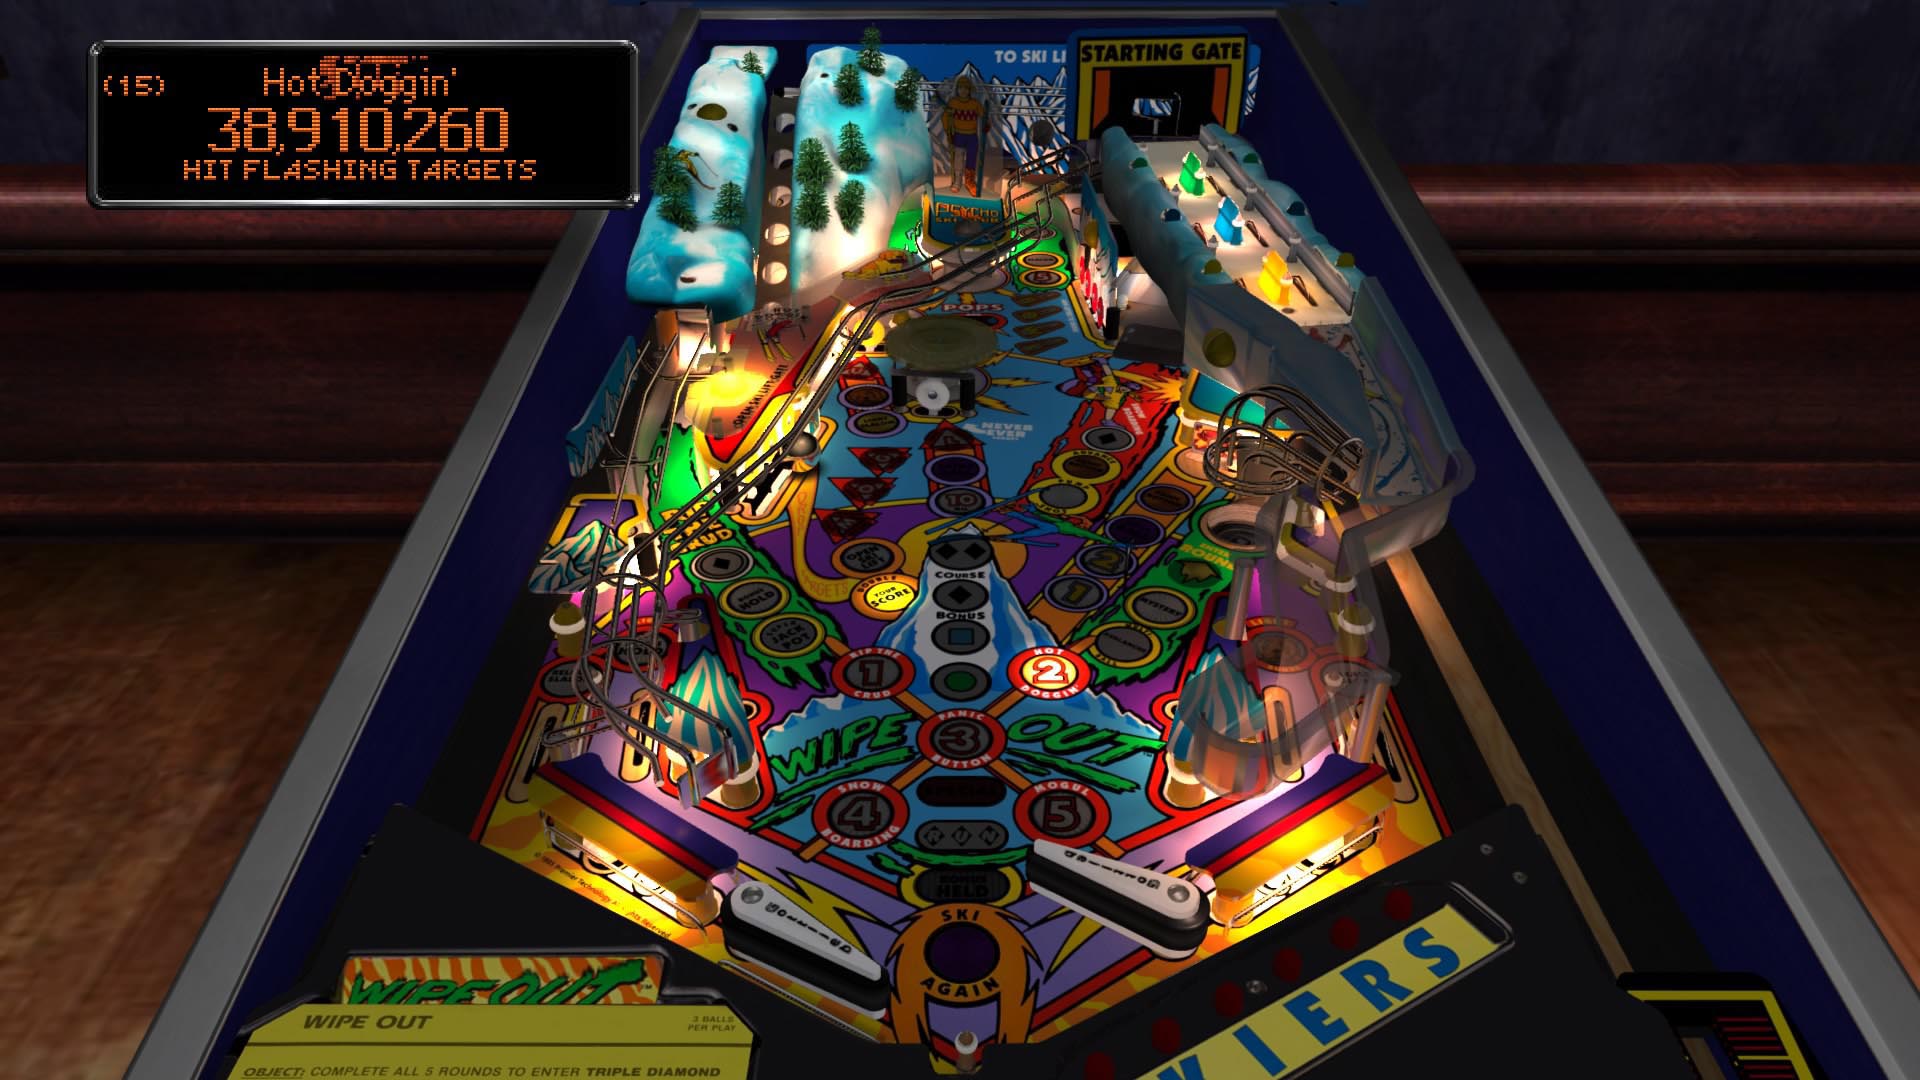 pinball arcade ps4 free